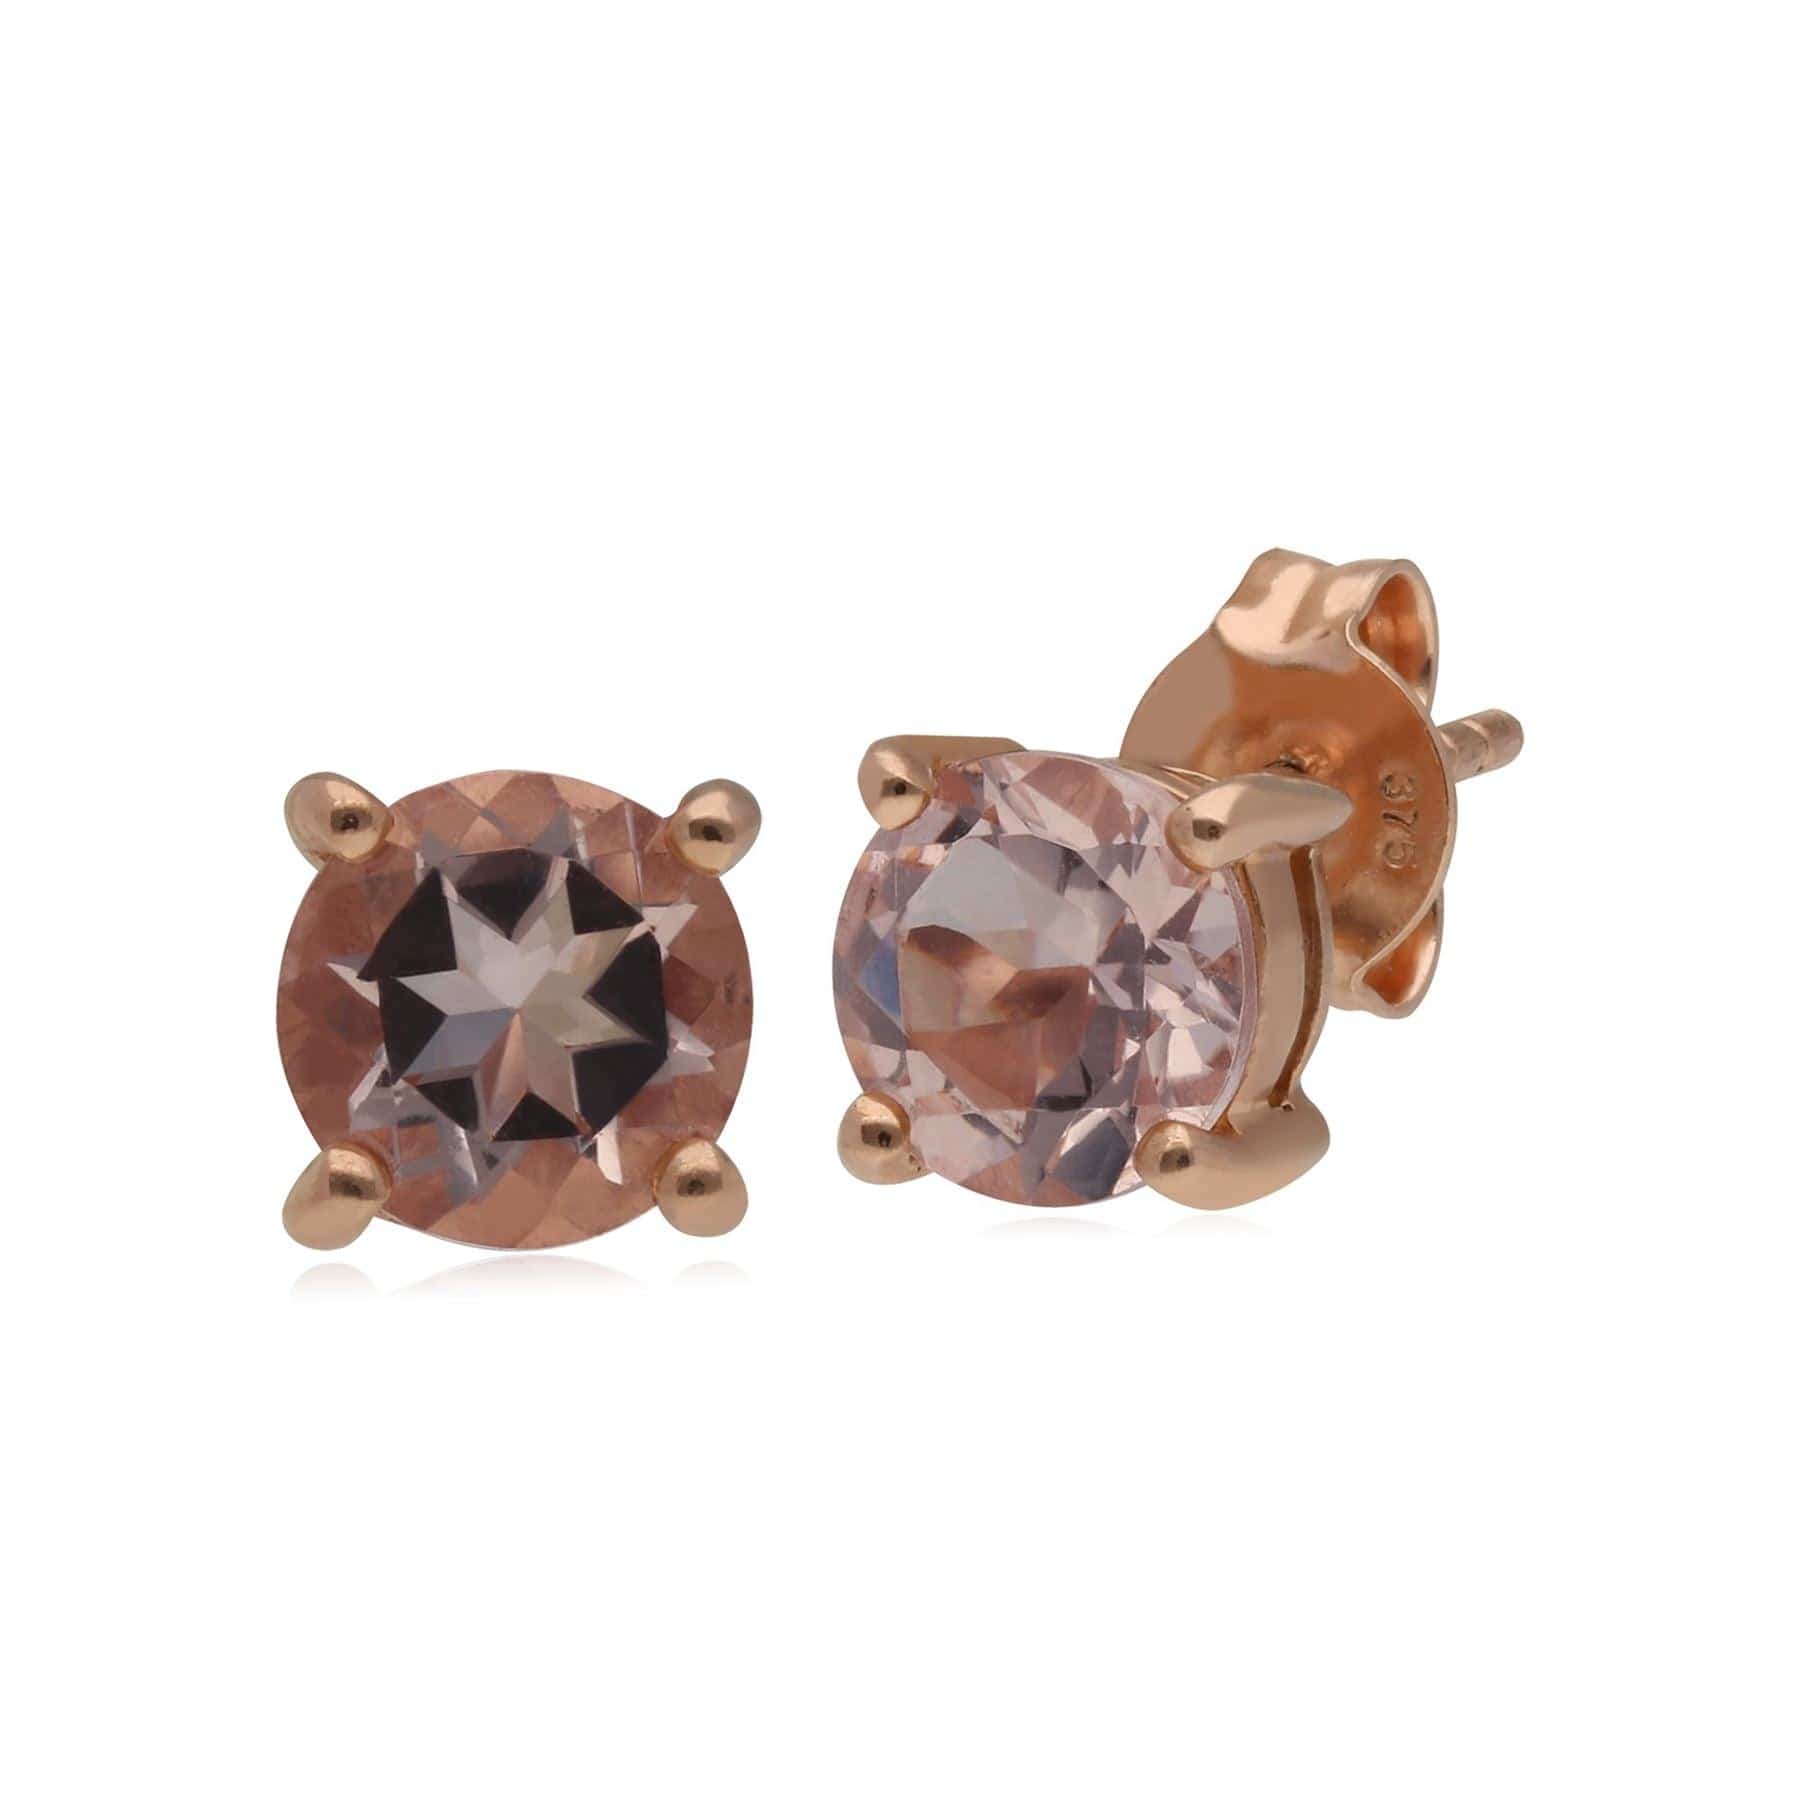 Kosmos Morganite Stud Earrings in 9ct Rose Gold - Gemondo